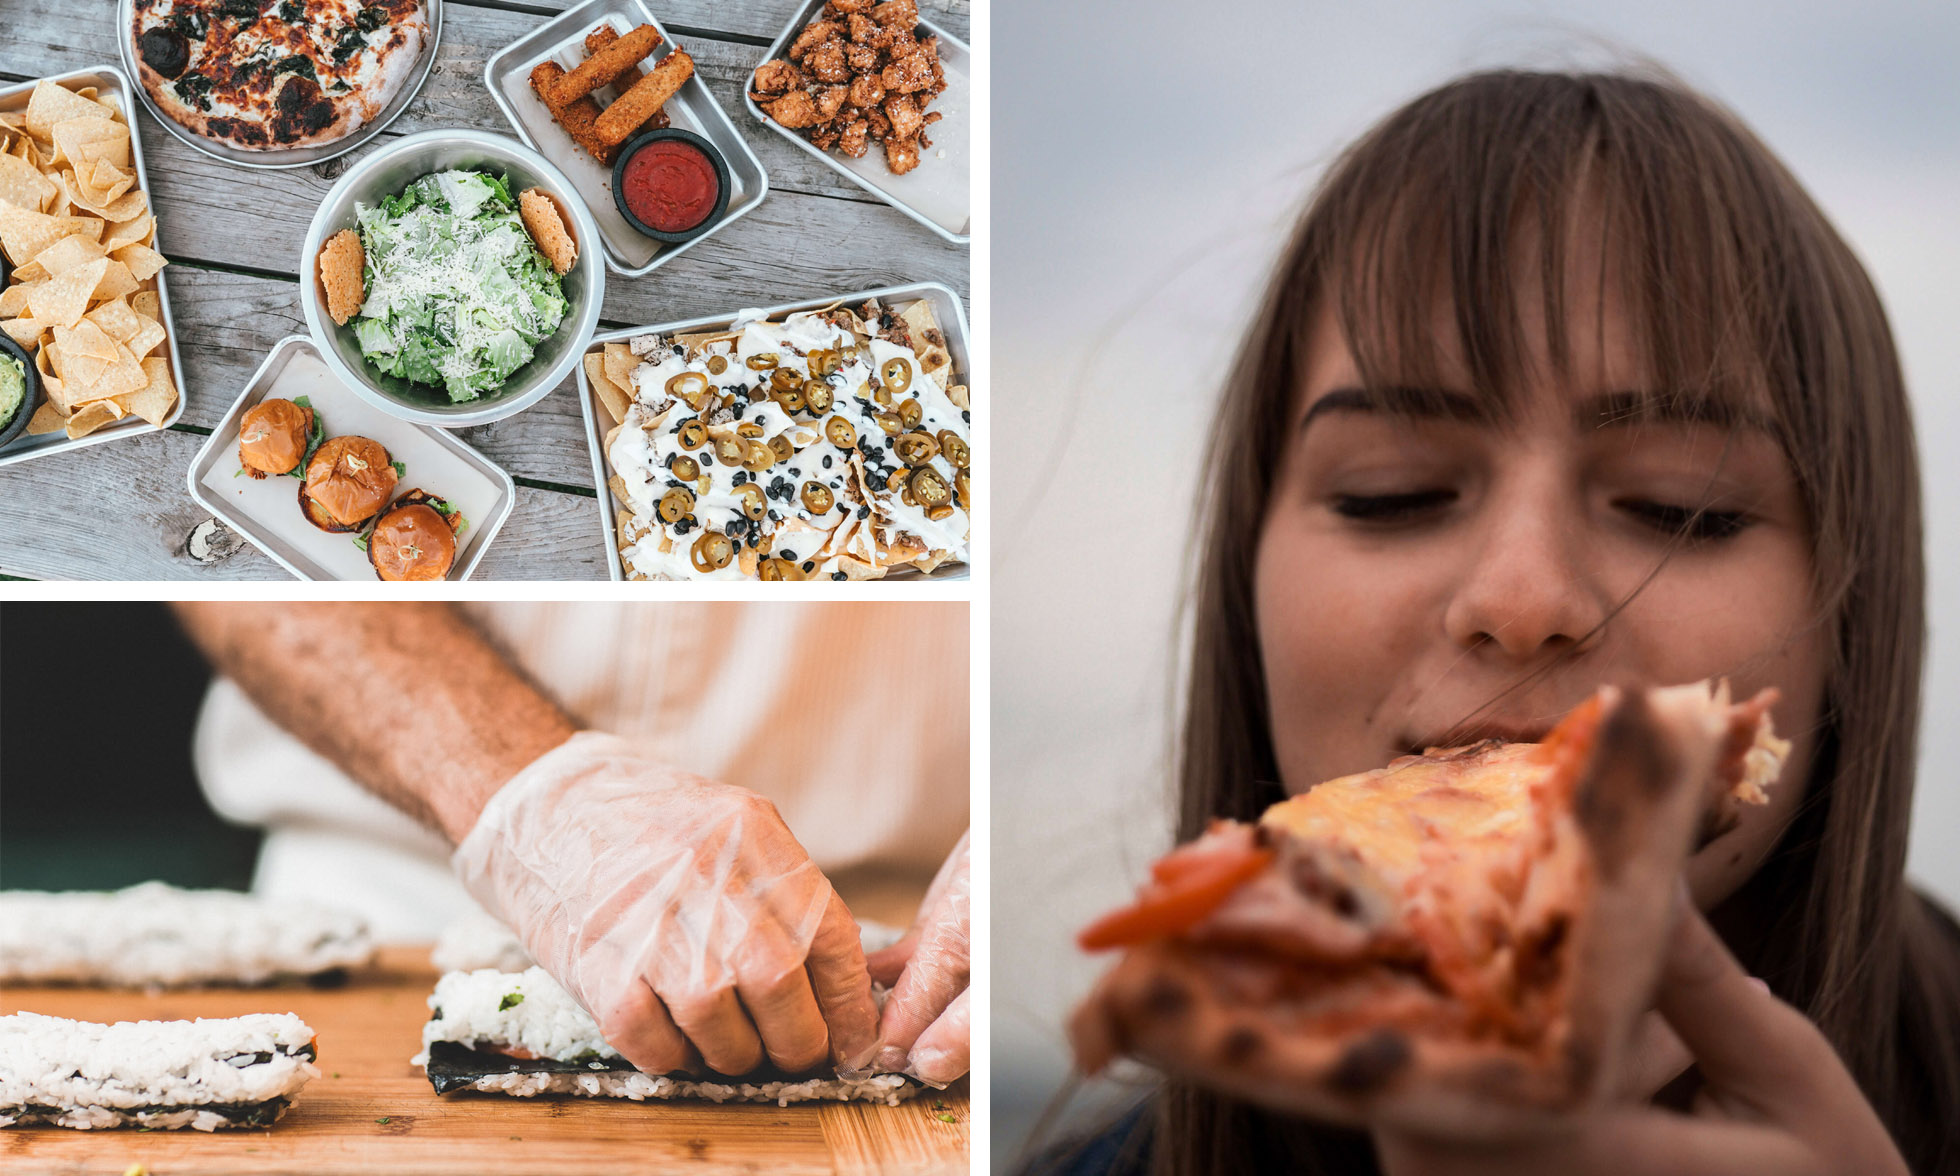 Nahaufnahme von zwei Händen in Handschuhen, die Sushi-Rollen zubereiten. Eine Frau genießt ein Stück Pizza.